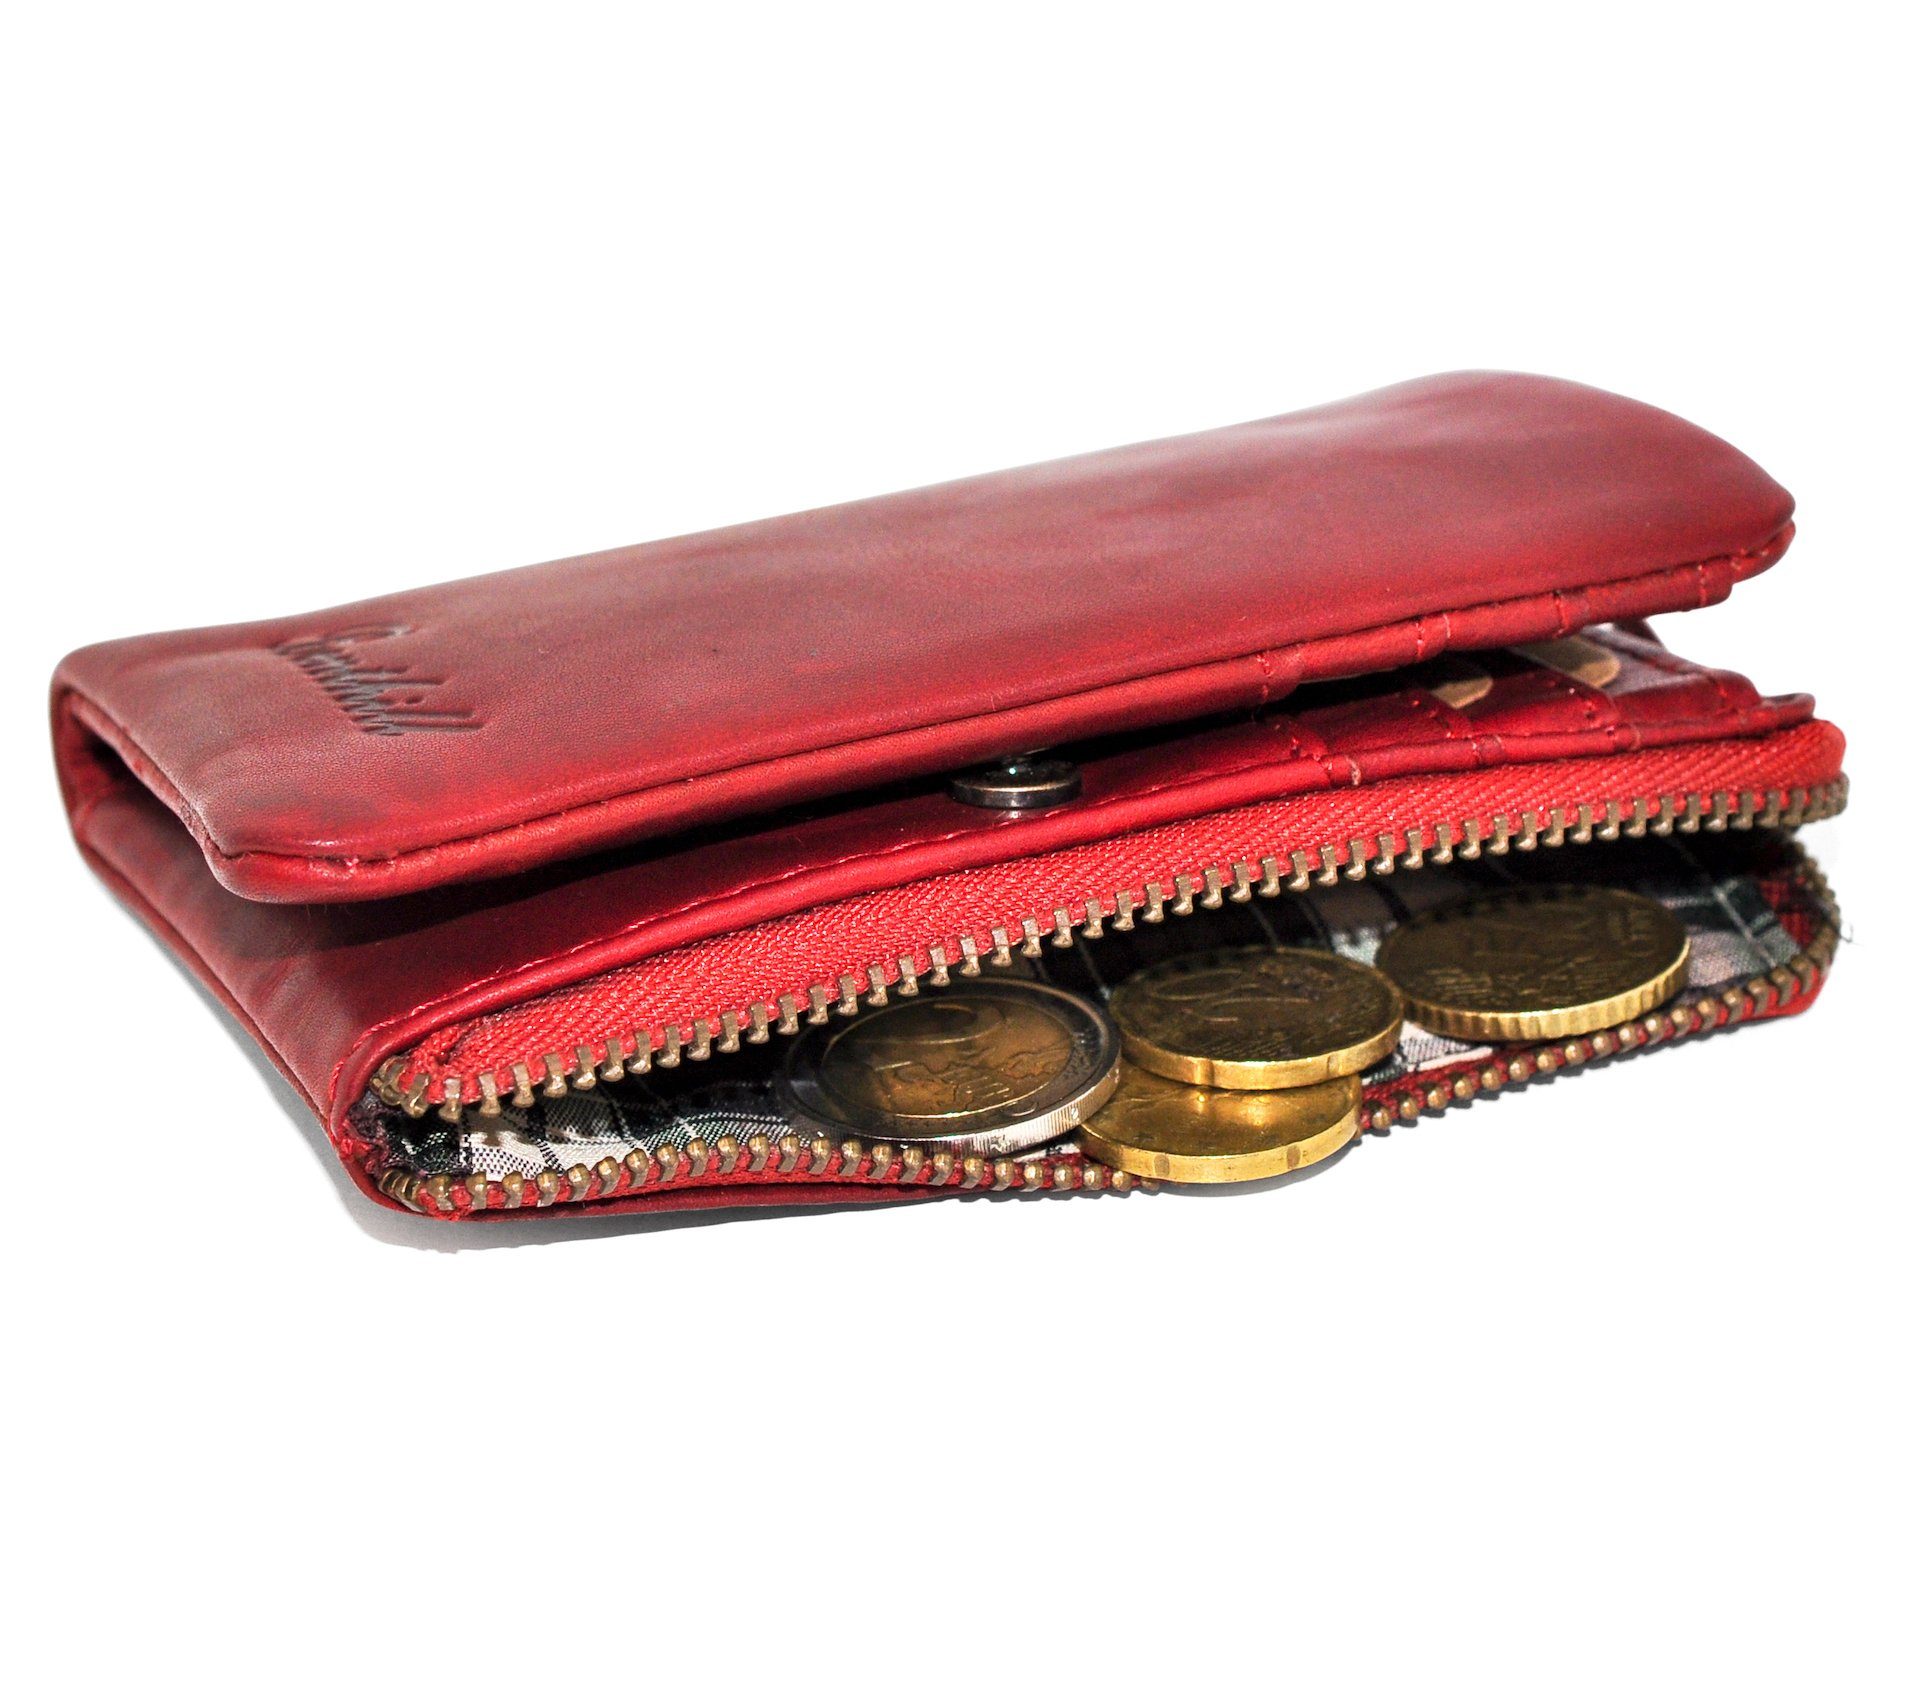 Benthill Geldbörse Klein Echt RFID-Schutz 6 Schutz Slim-Wallet, Rot Reißverschlussfach RFID Leder Kartenfächer Geldbeutel Kartenfächer Münzfach